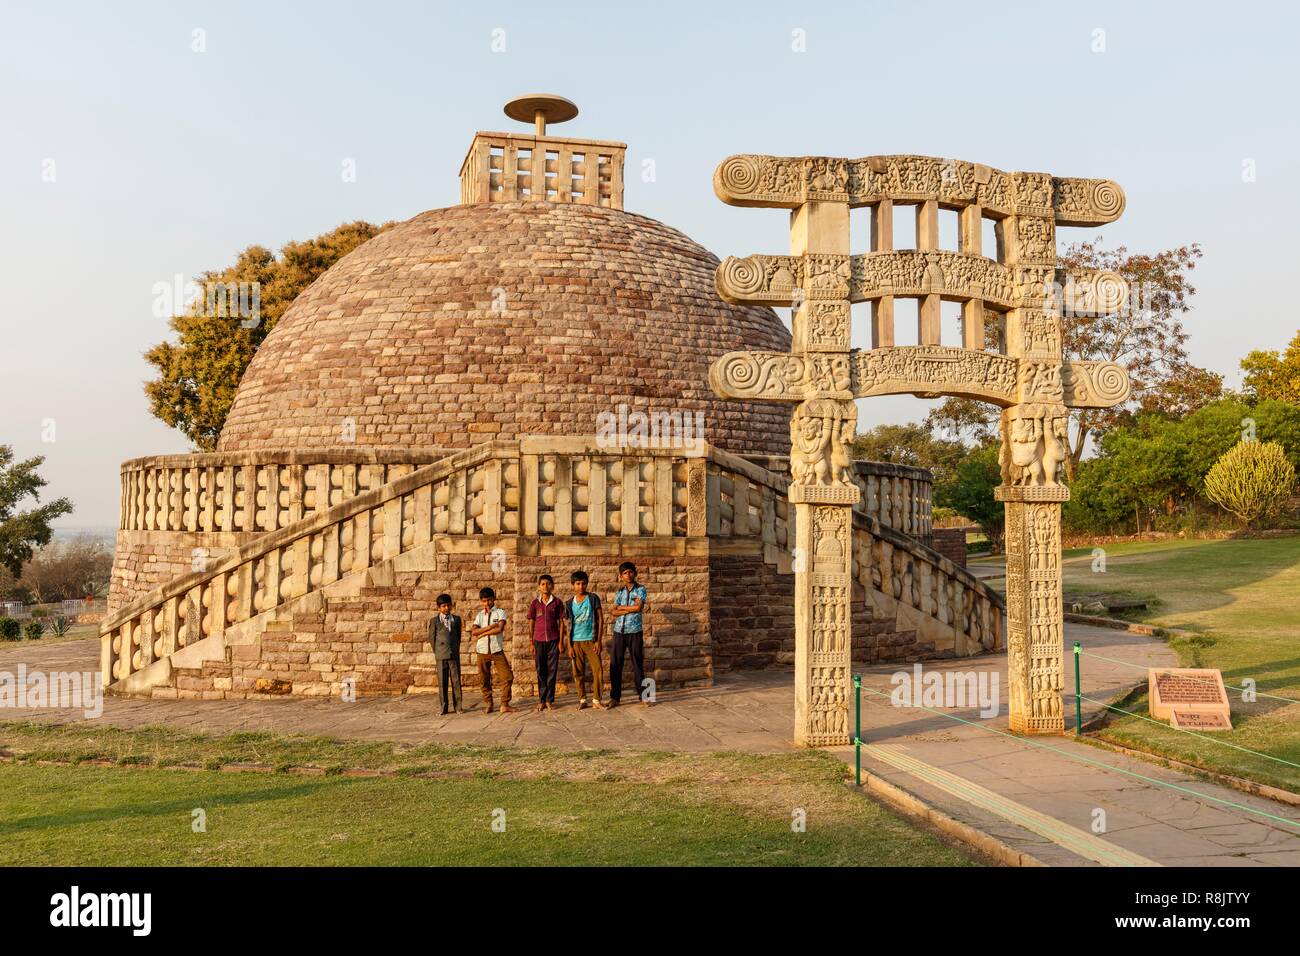 La India, Madhya Pradesh, monumentos bouddhist Sanchi, catalogado como Patrimonio de la Humanidad por la UNESCO, los niños cerca de la estupa 3 Foto de stock